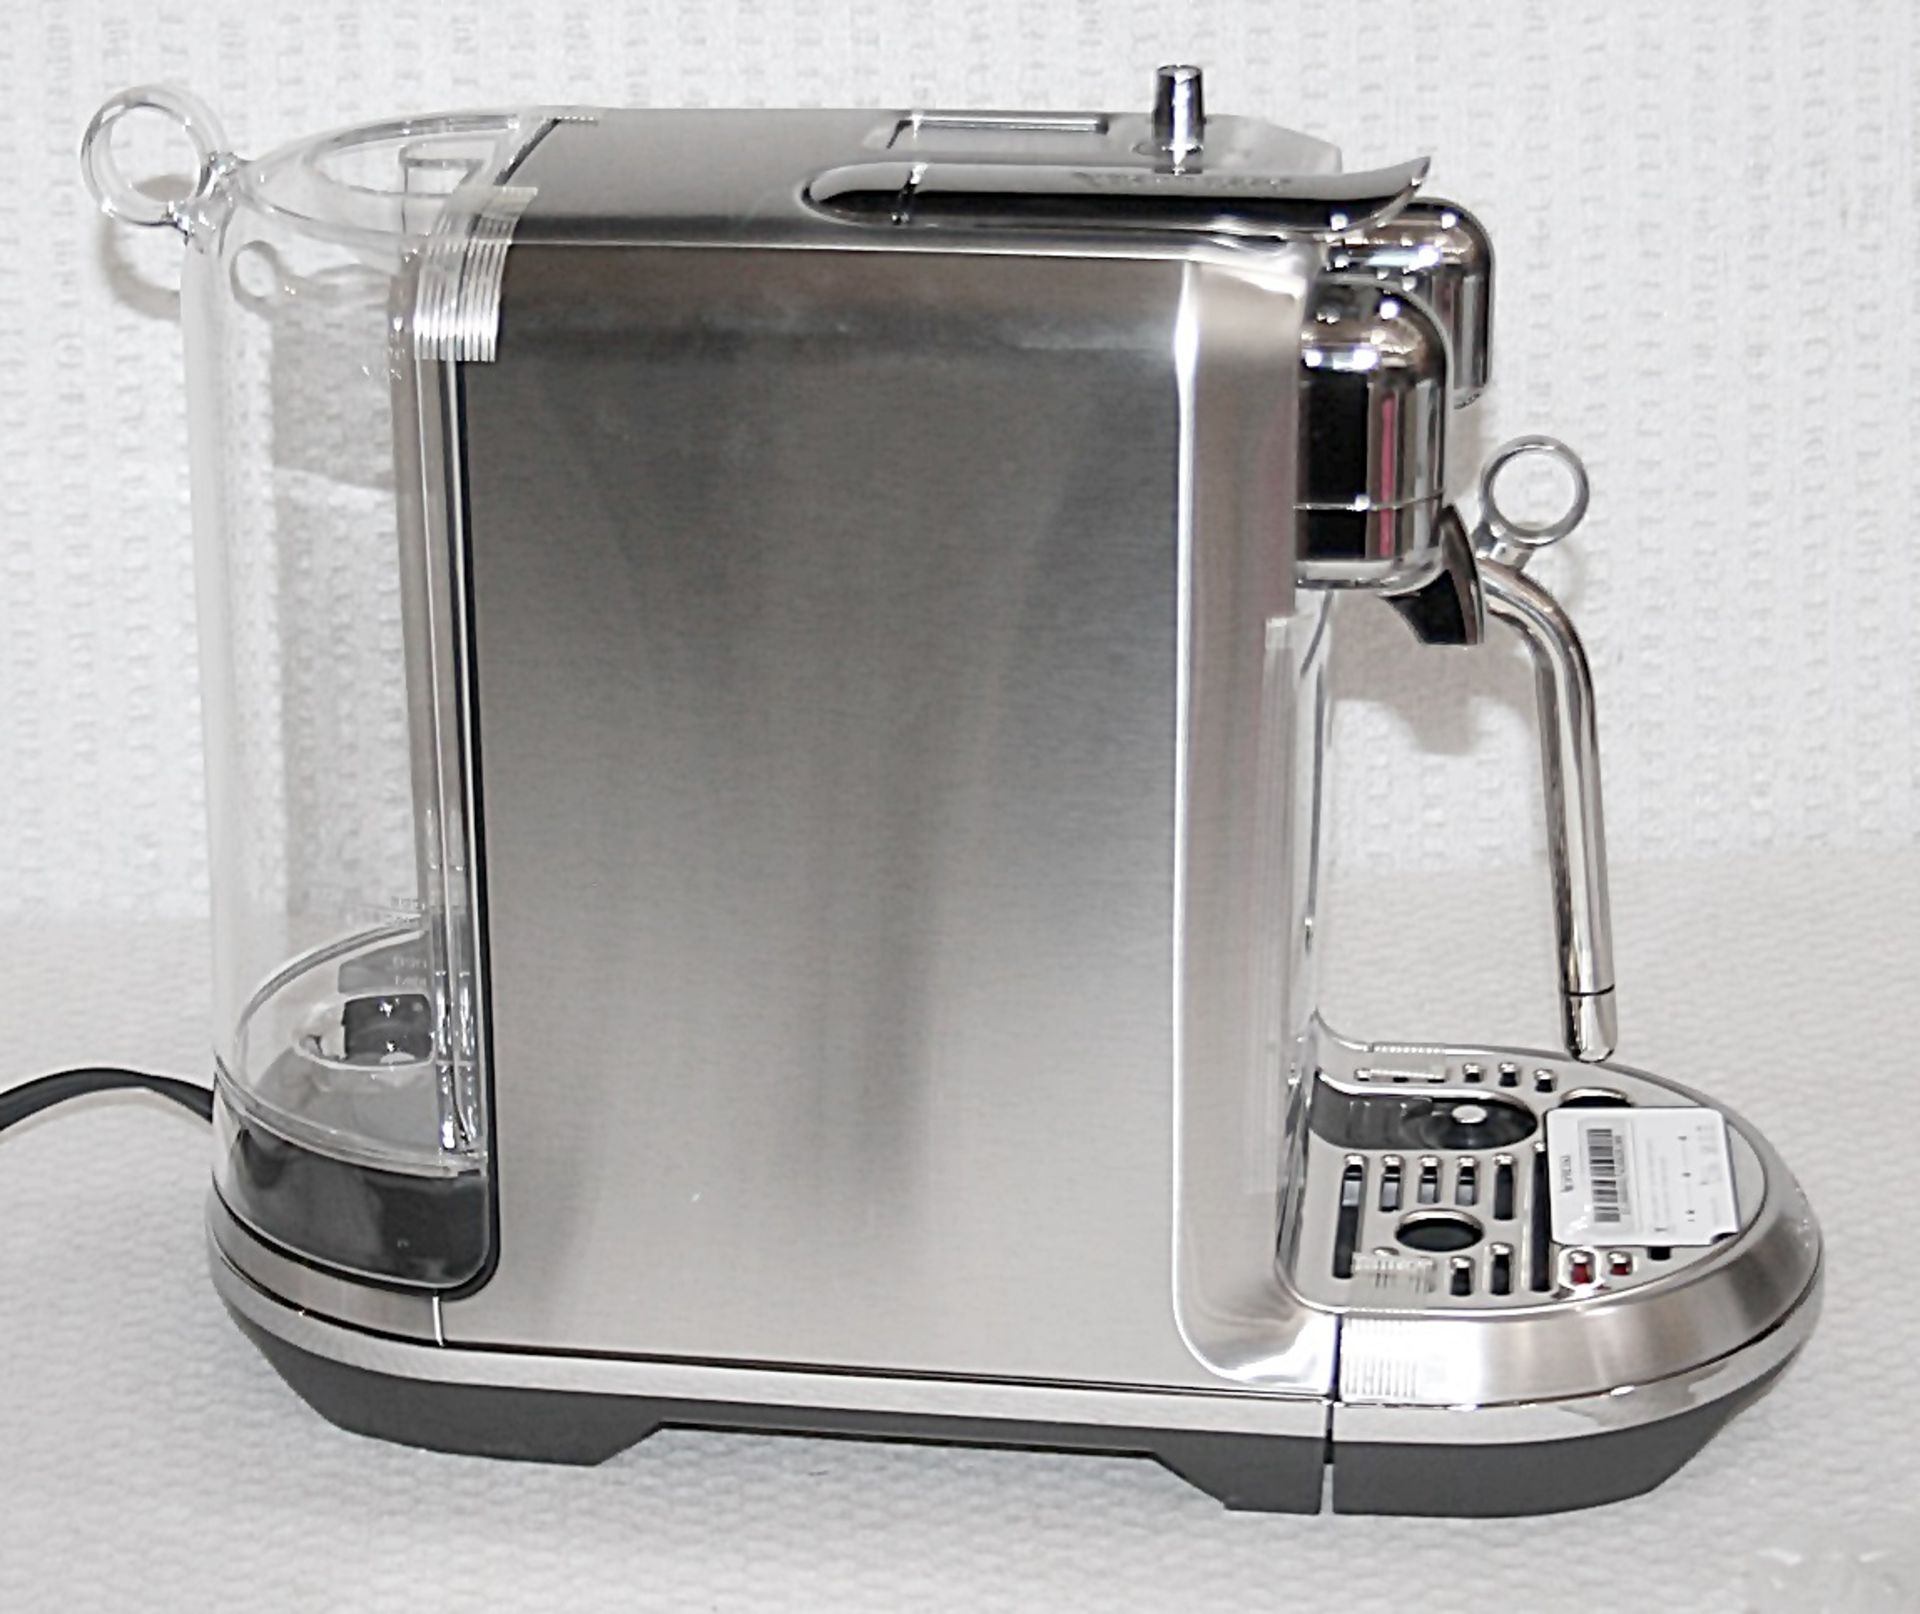 1 x NESPRESSO 'Creatista Plus' Coffee Machine In Silver - Original Price £479.95 - Boxed Stock - Image 12 of 18